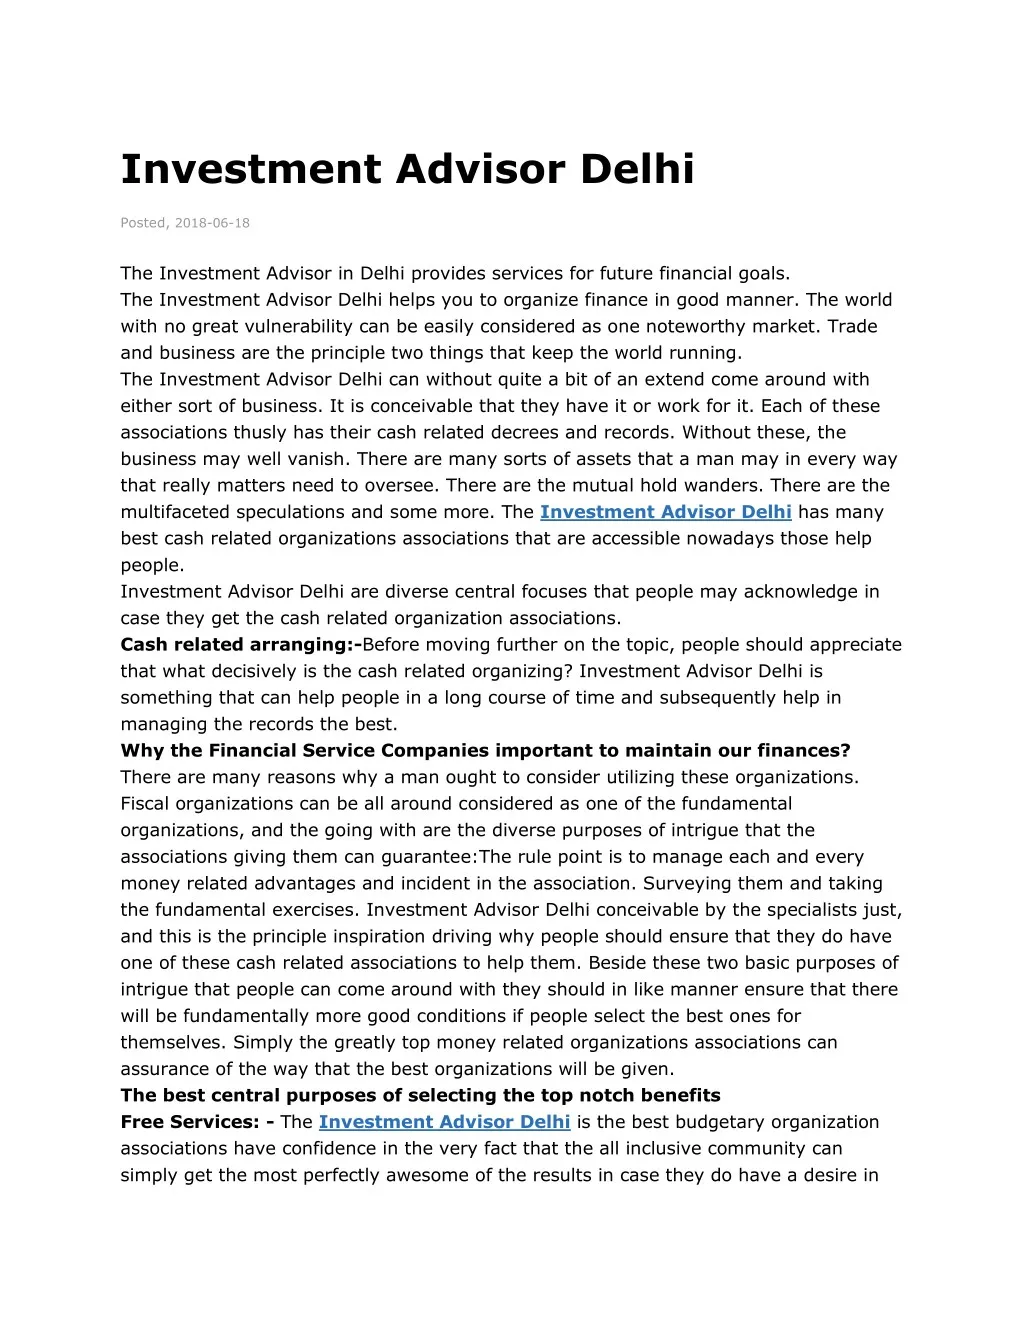 investment advisor delhi